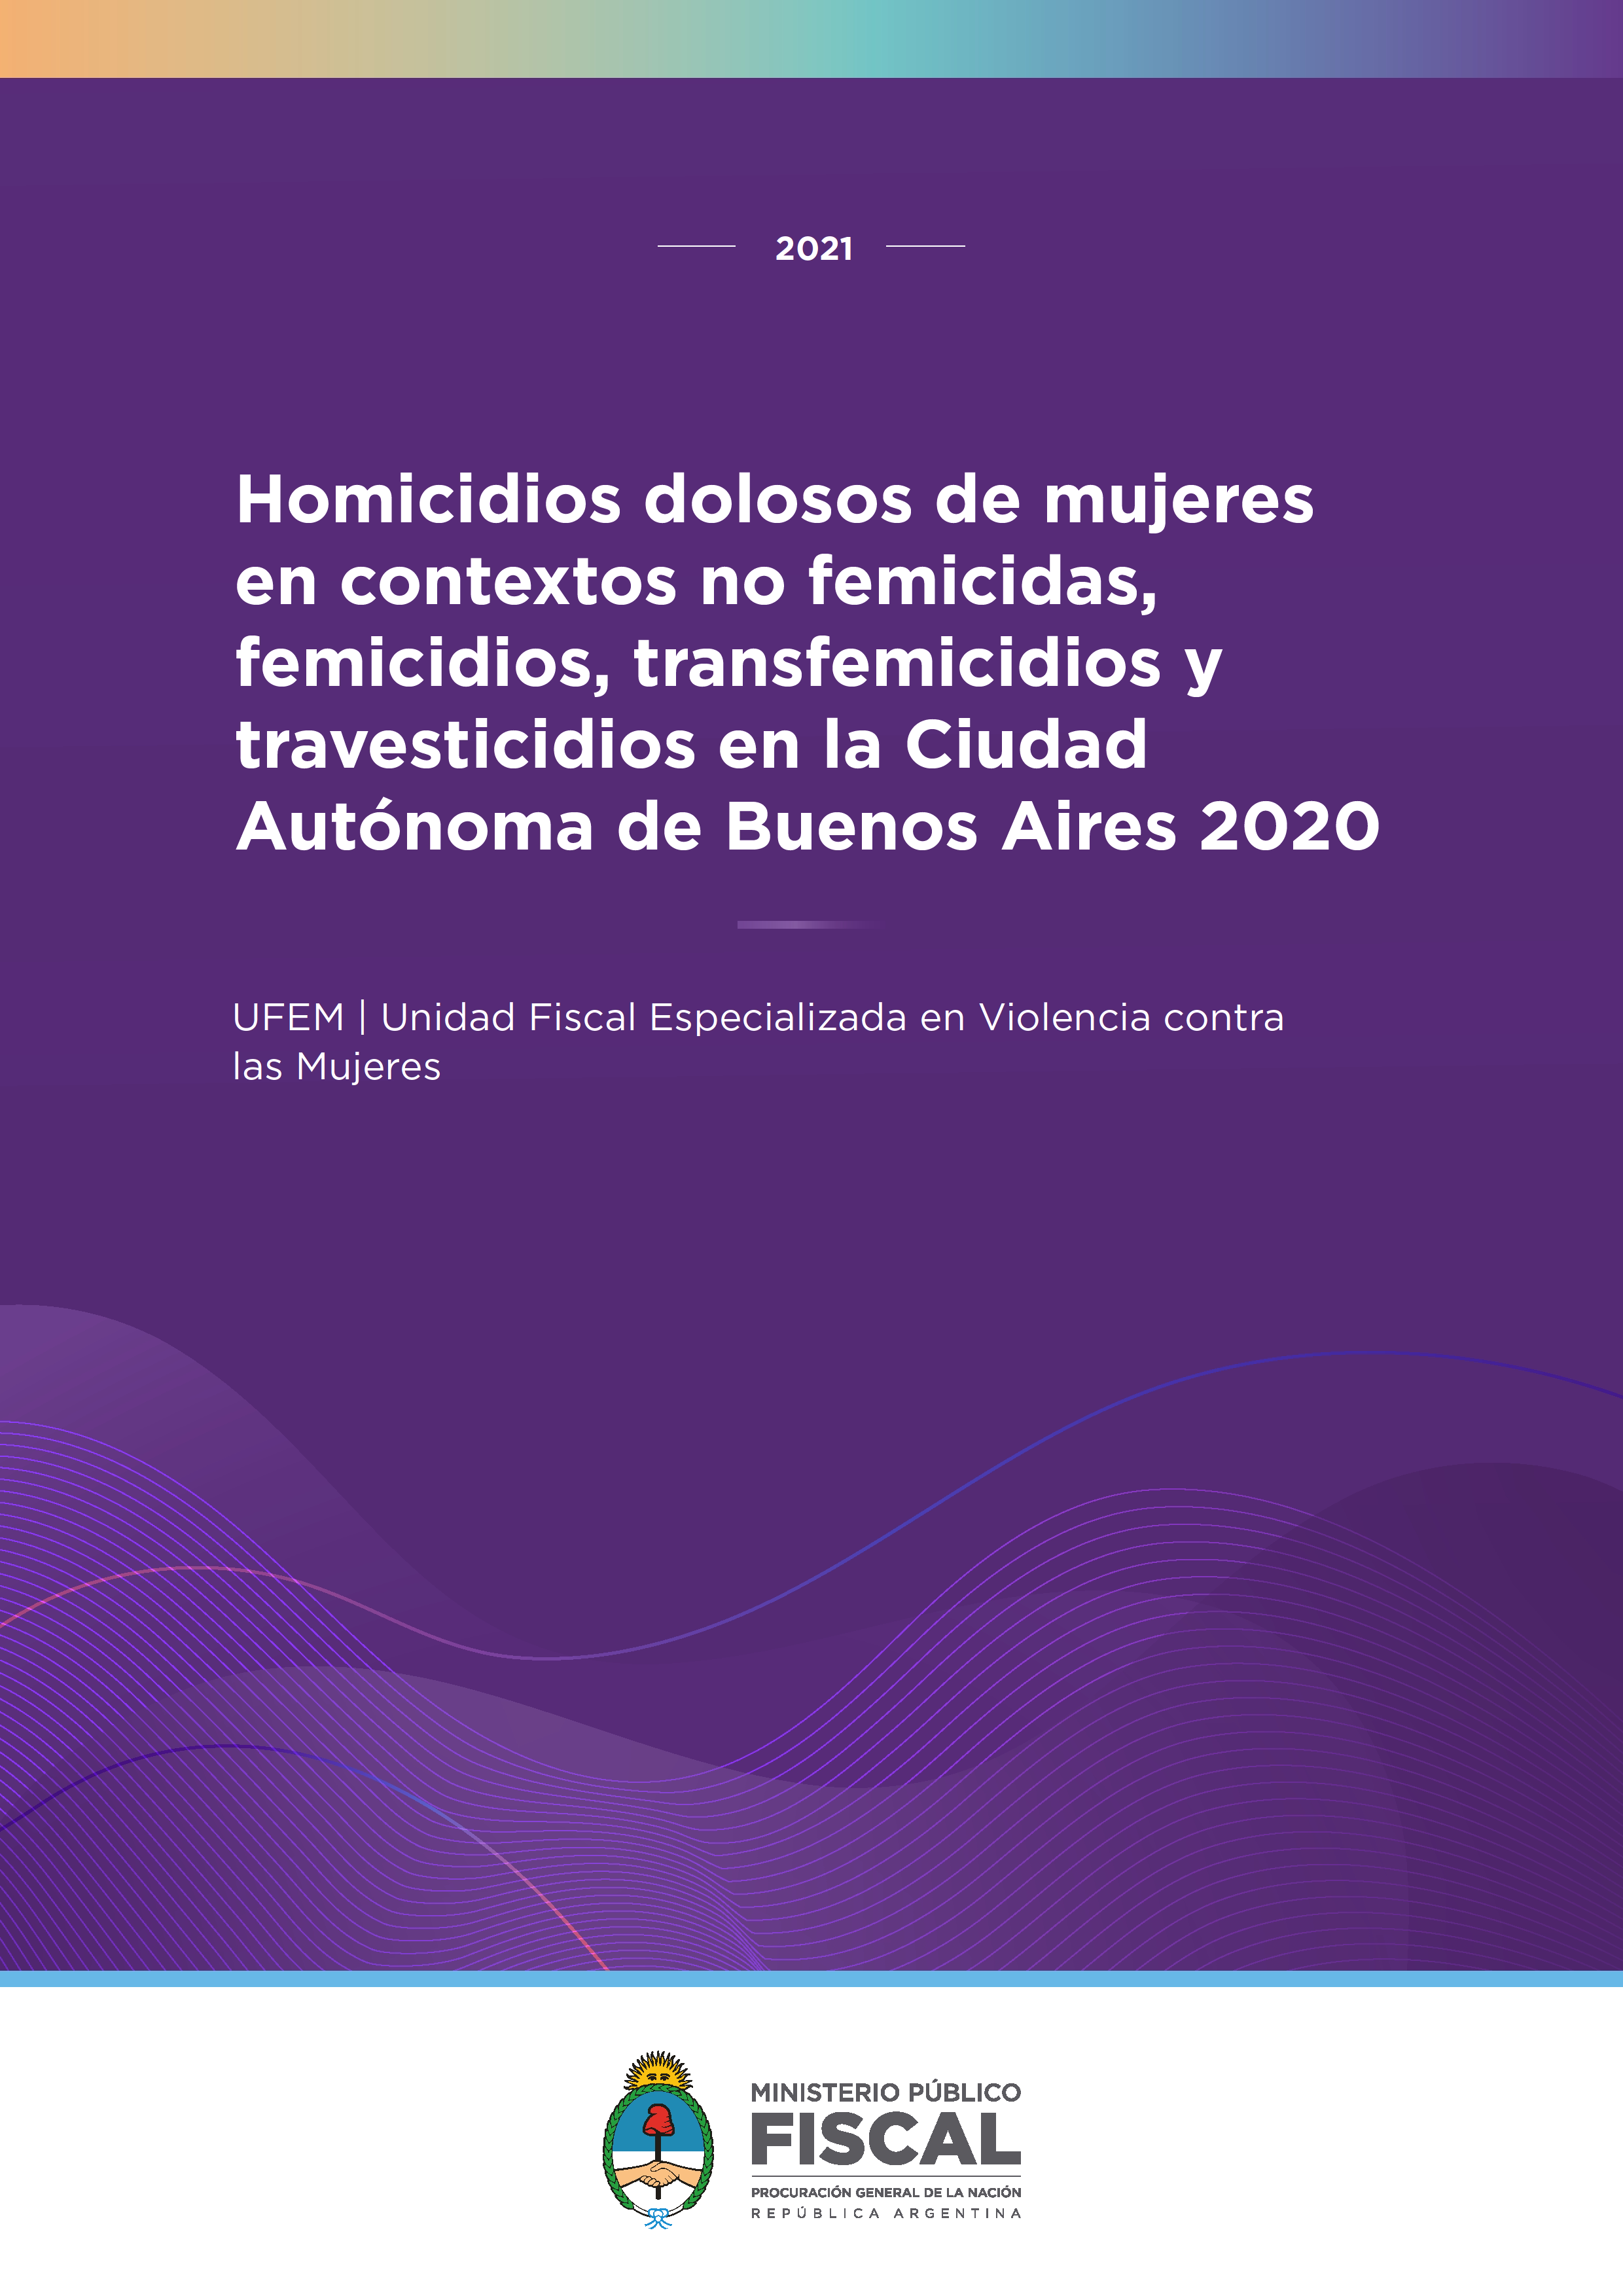 Homicidios dolosos de mujeres en contextos no femicidas, femicidios, transfemicidios y travesticidios en la Ciudad Autónoma de Buenos Aires 2020 